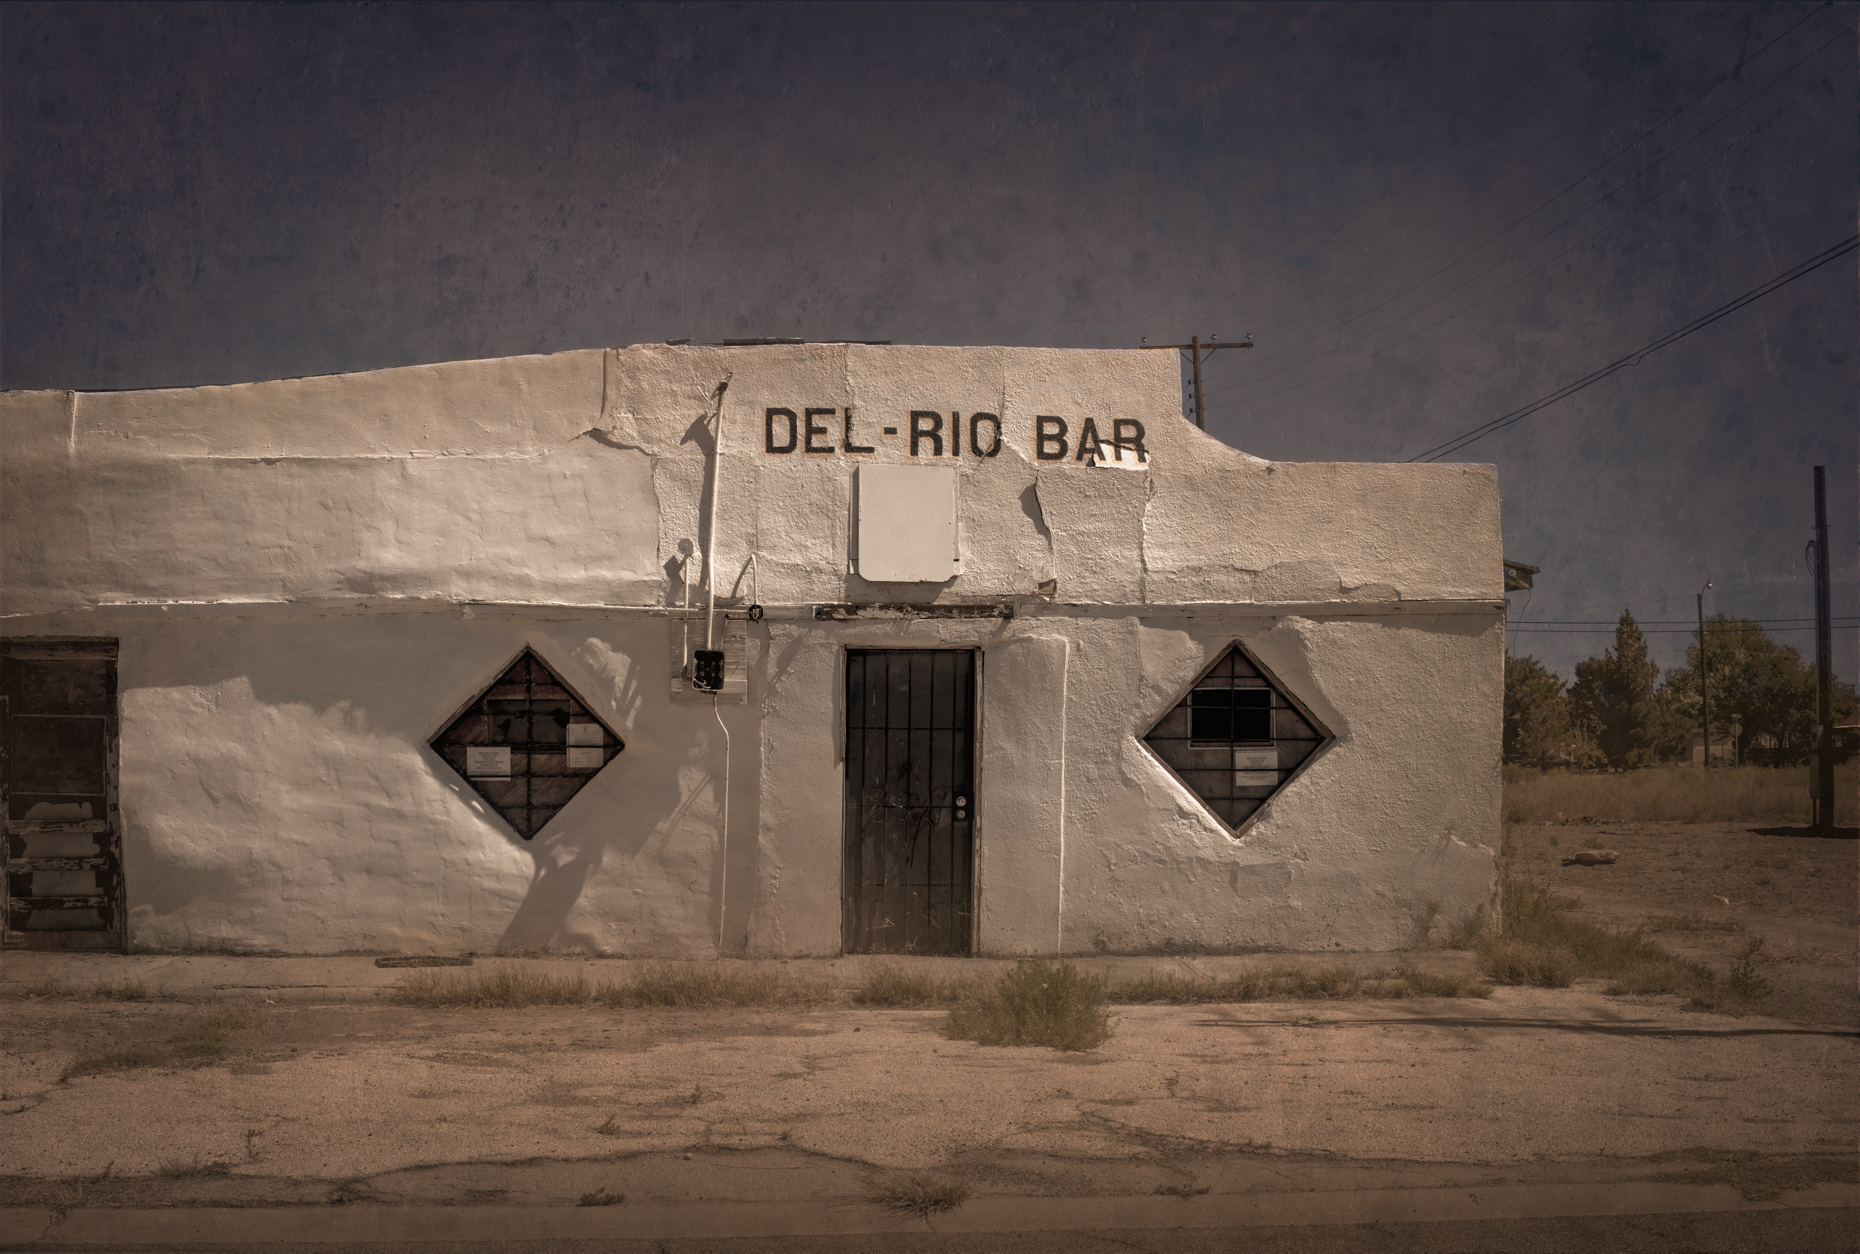 "Del Rio Bar", Pecos, Texas